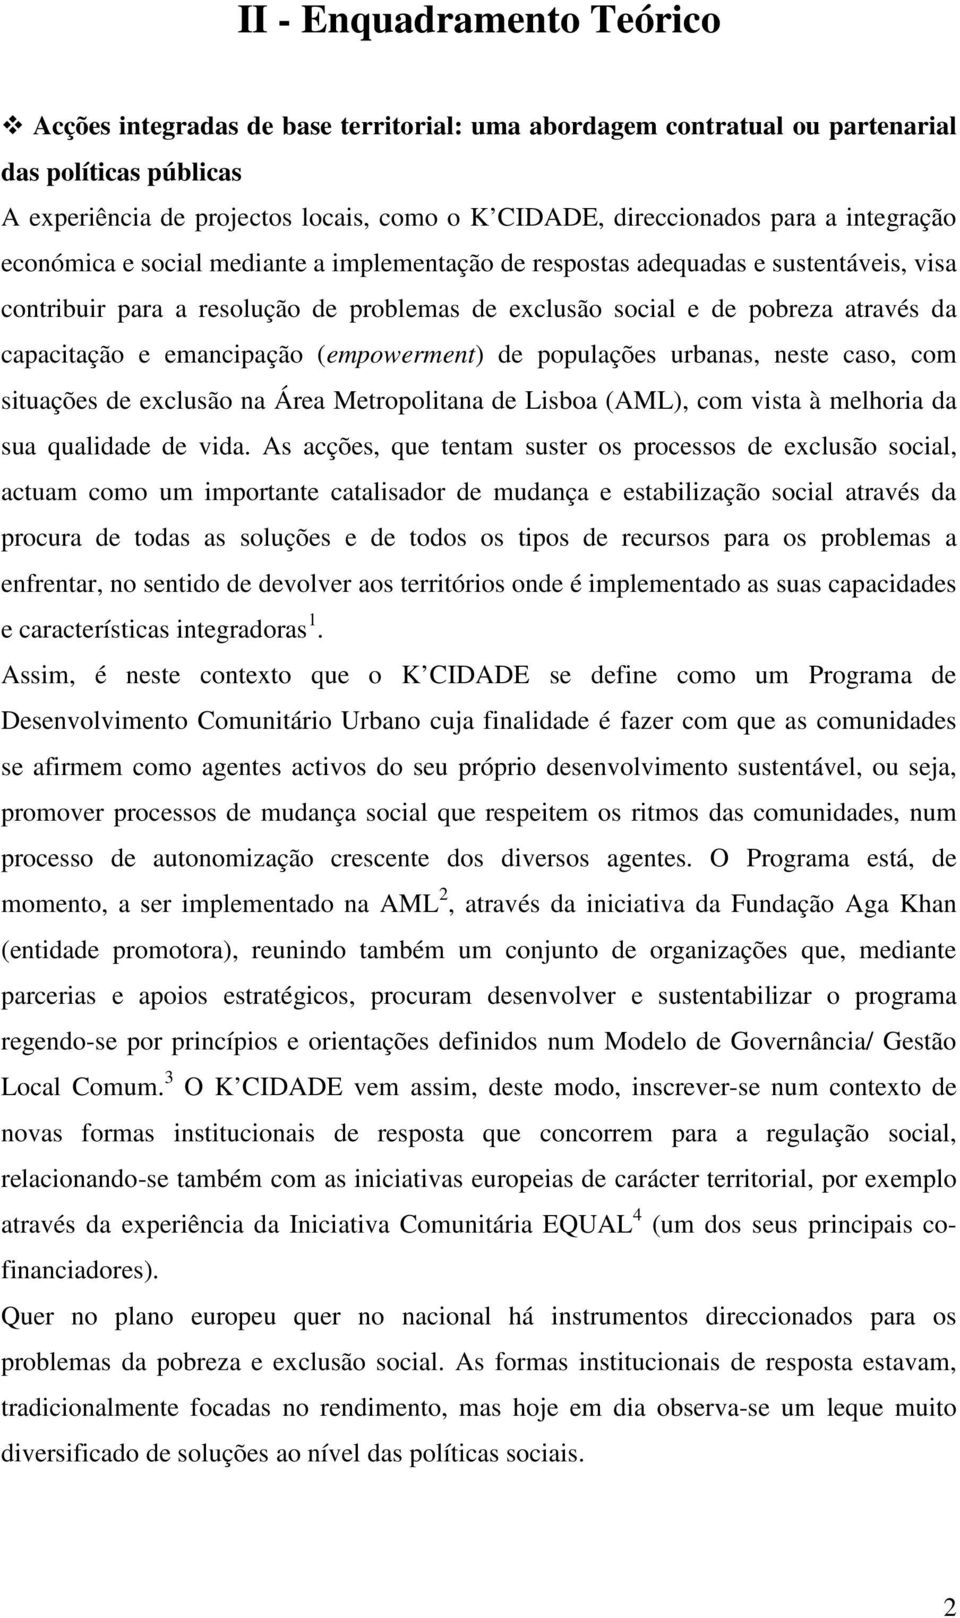 emancipação (empowerment) de populações urbanas, neste caso, com situações de exclusão na Área Metropolitana de Lisboa (AML), com vista à melhoria da sua qualidade de vida.